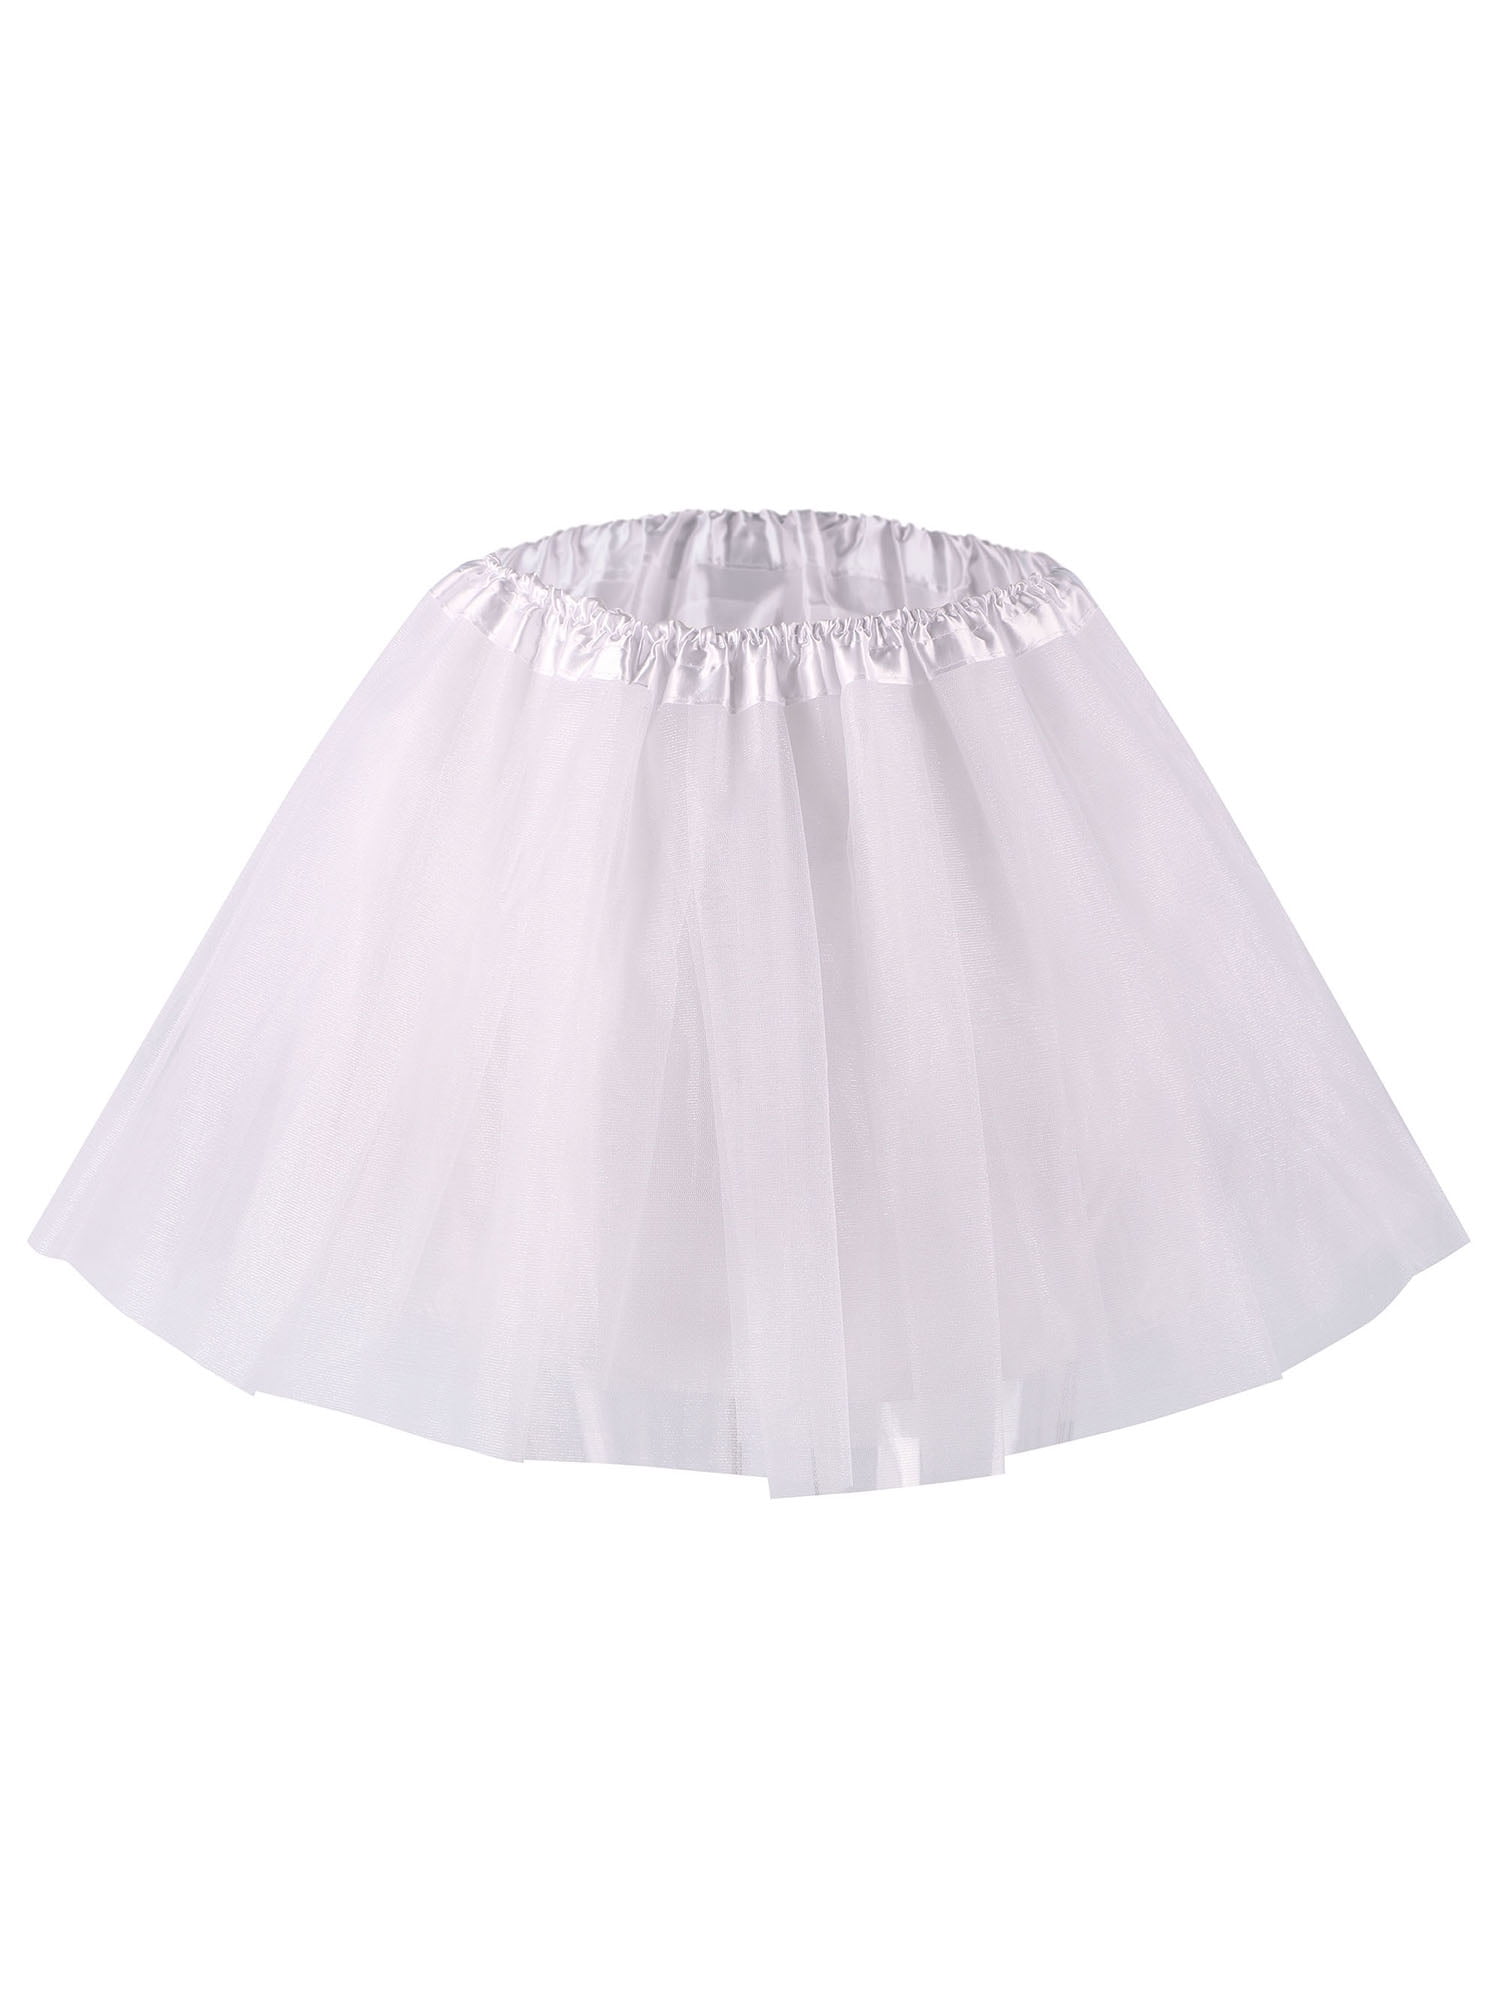 Womens Tutu Classic 4 Layered Satin Lined Ballerina Tutu Skirt,White